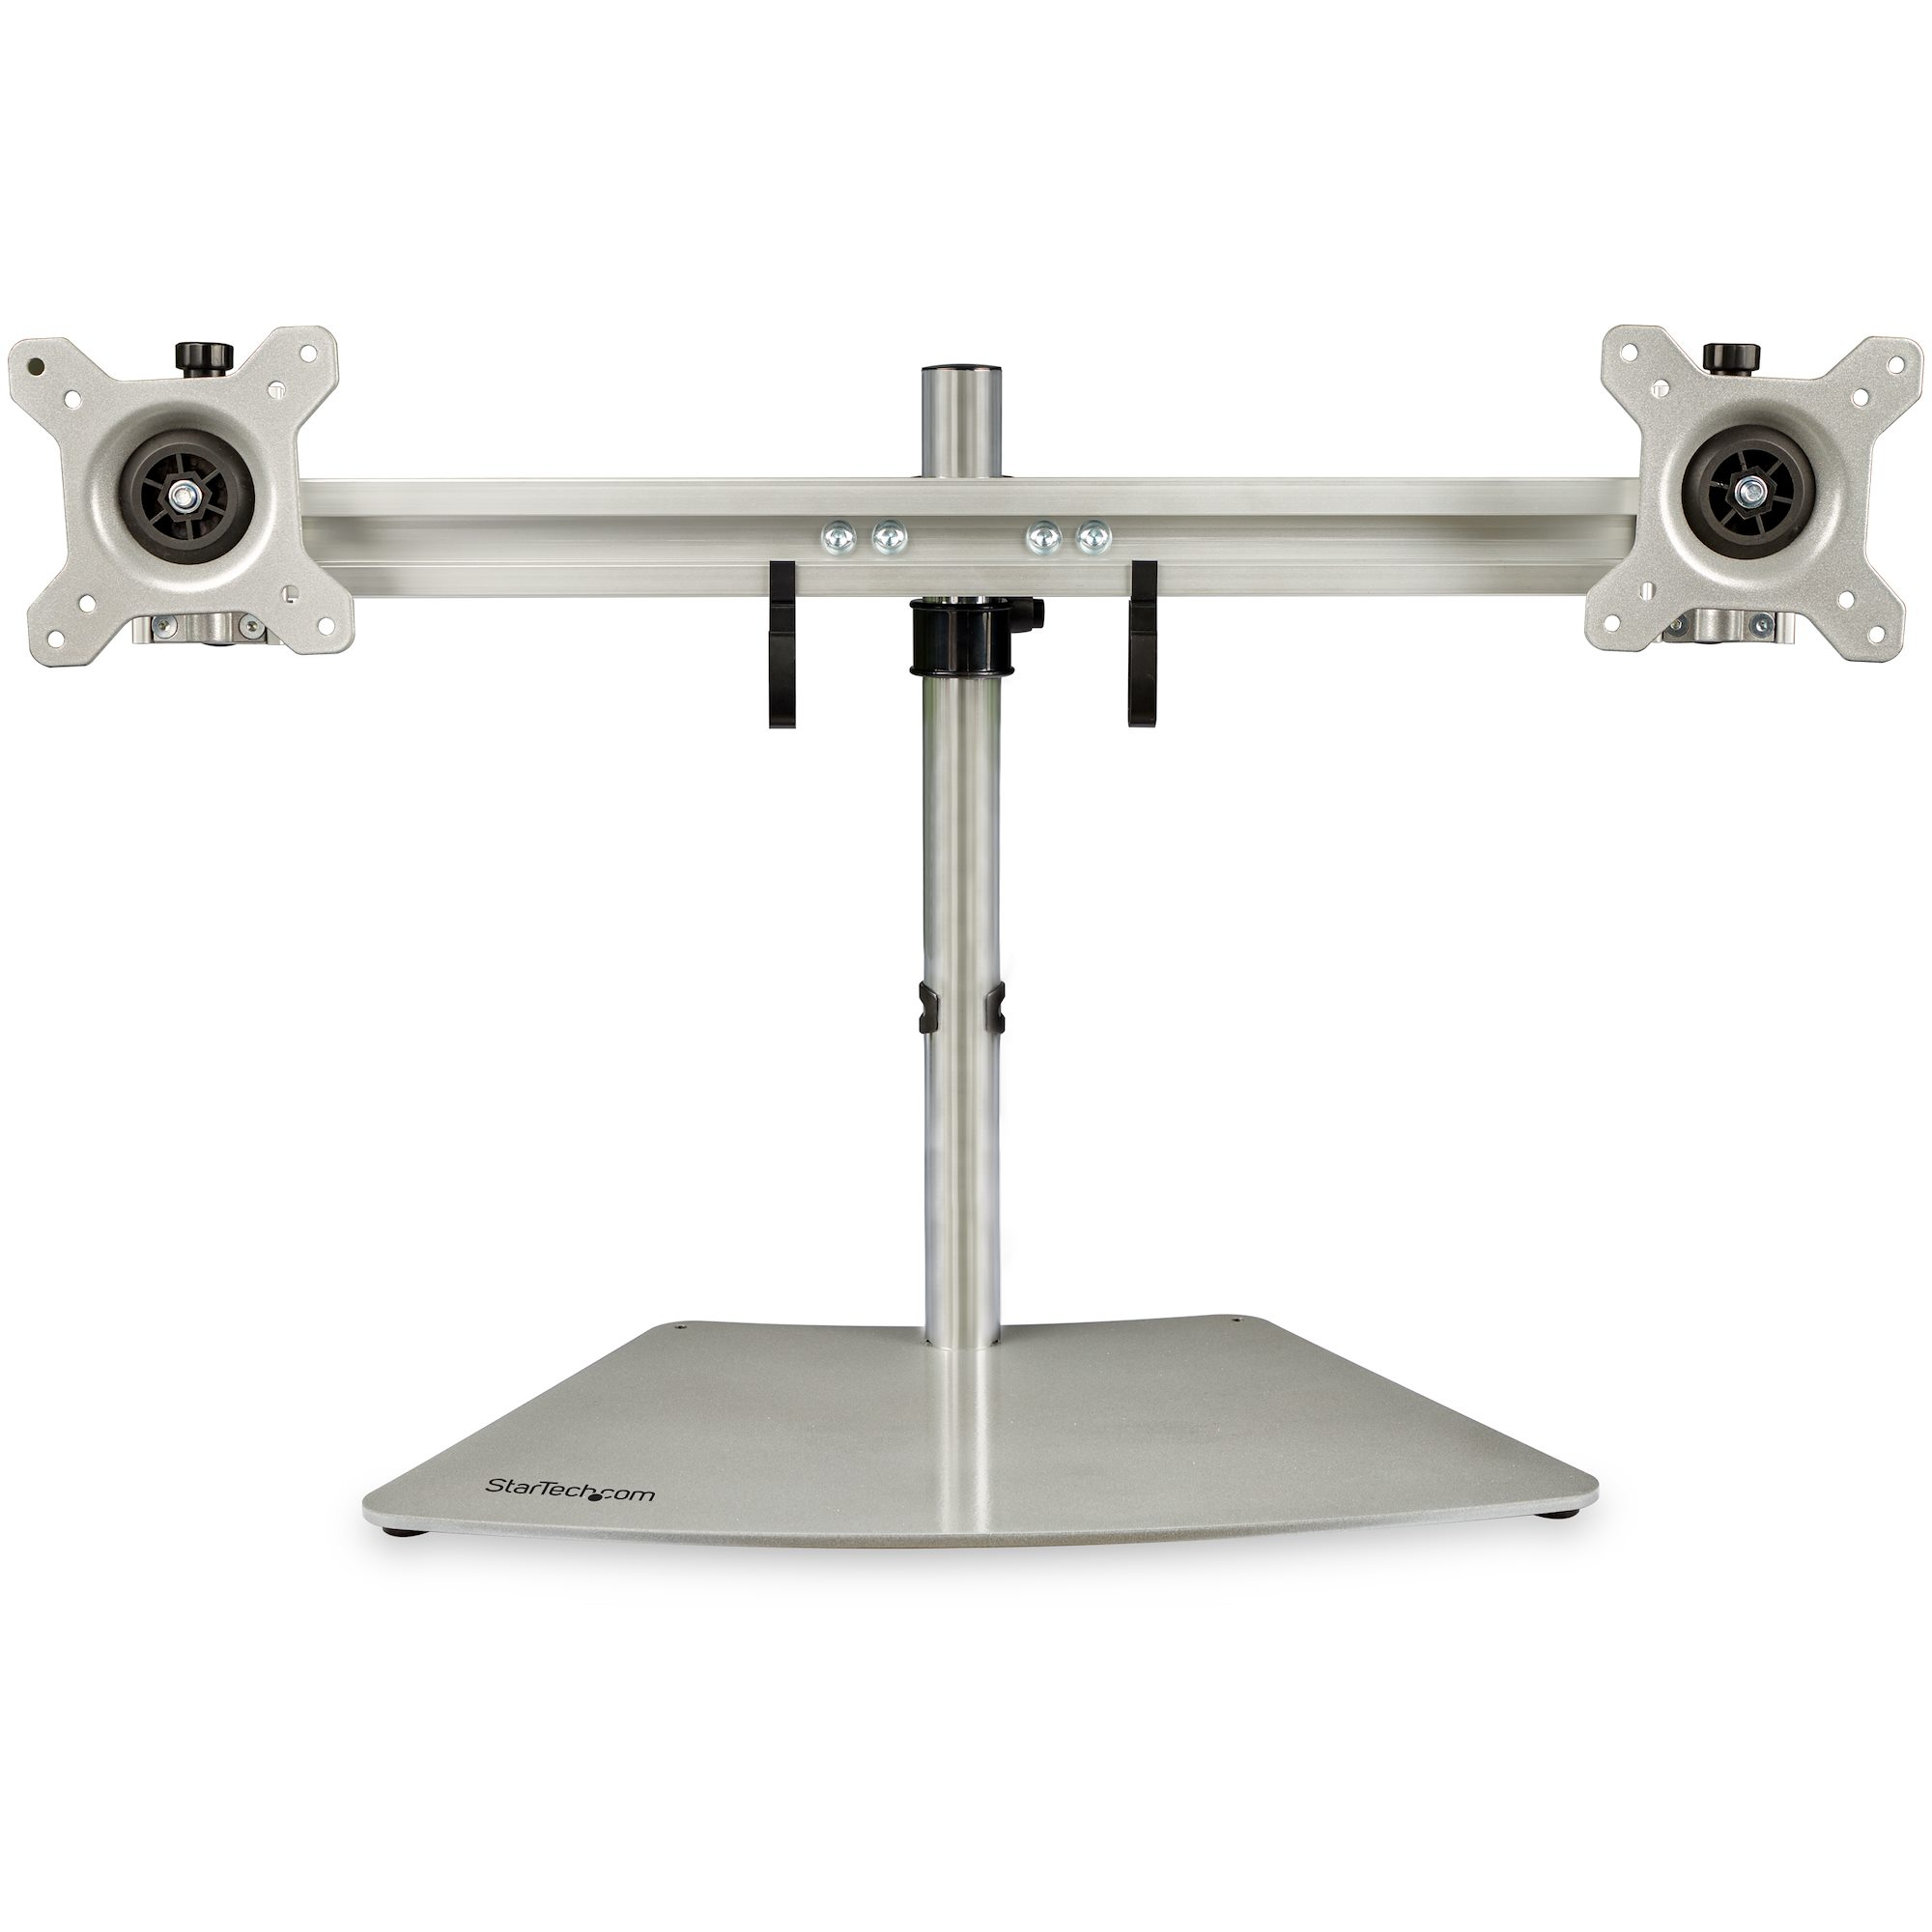 StarTech.com Doppelmonitorhalterung - Ergonomische, freistehende Doppelmonitor-Tischhalterung für zwei 24" Bildschirme(je 8kg) mit VESA-Montage - Synchronisierte Höhenverstellung - Silber (ARMDUOSS)